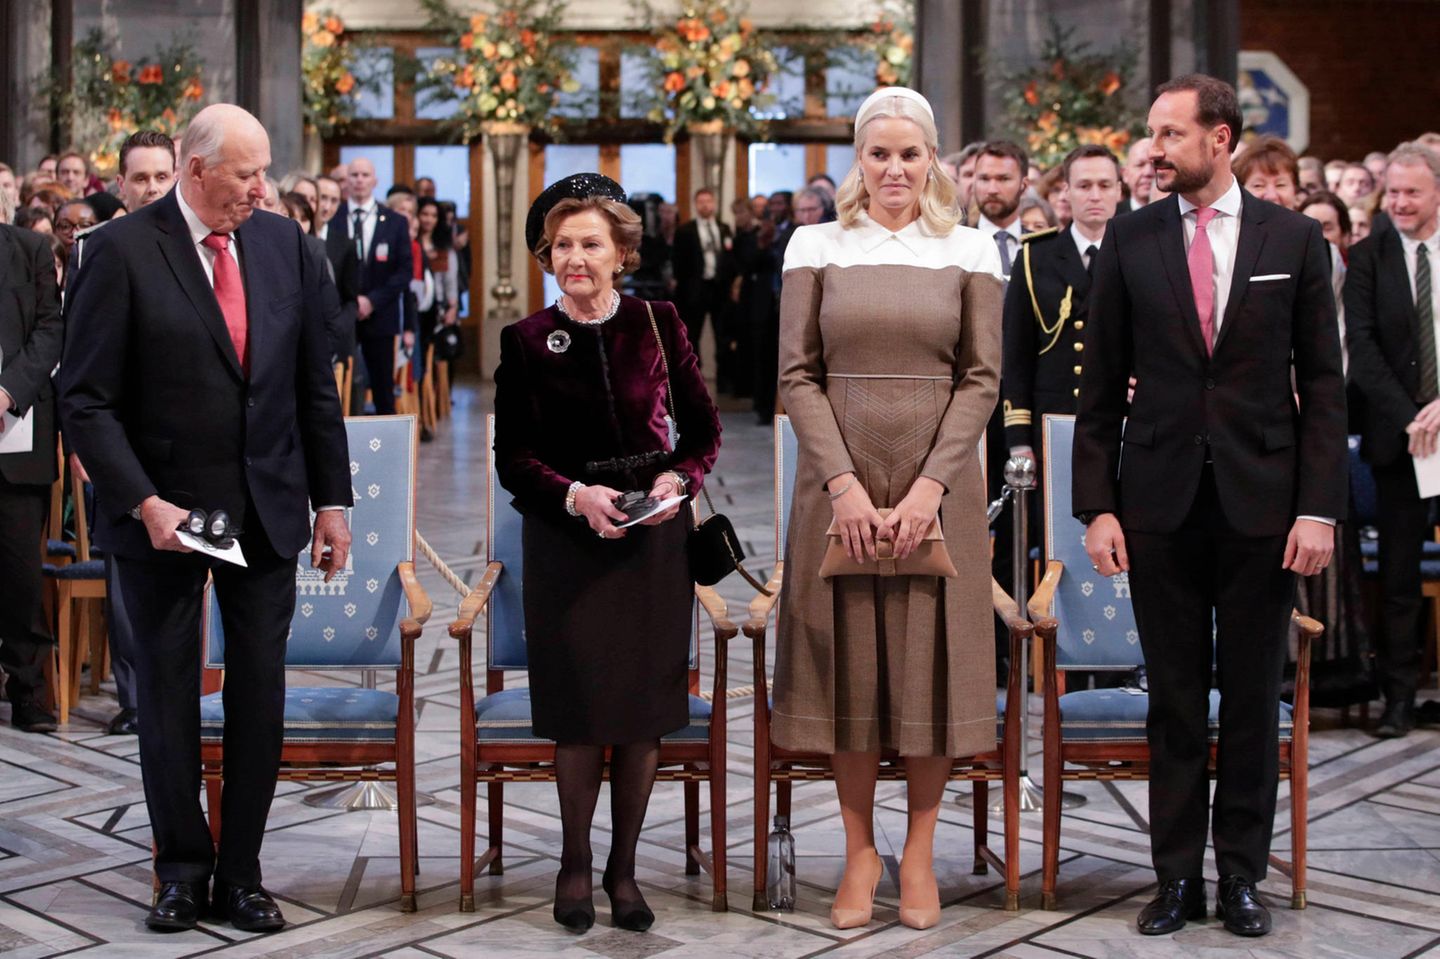 Die Königsfamilie nimmt Platz und eröffnet die Veranstaltung. Seit 1901 wird der wichtigste internationale Friedenspreis am Todestag von Alfred Nobel verliehen.